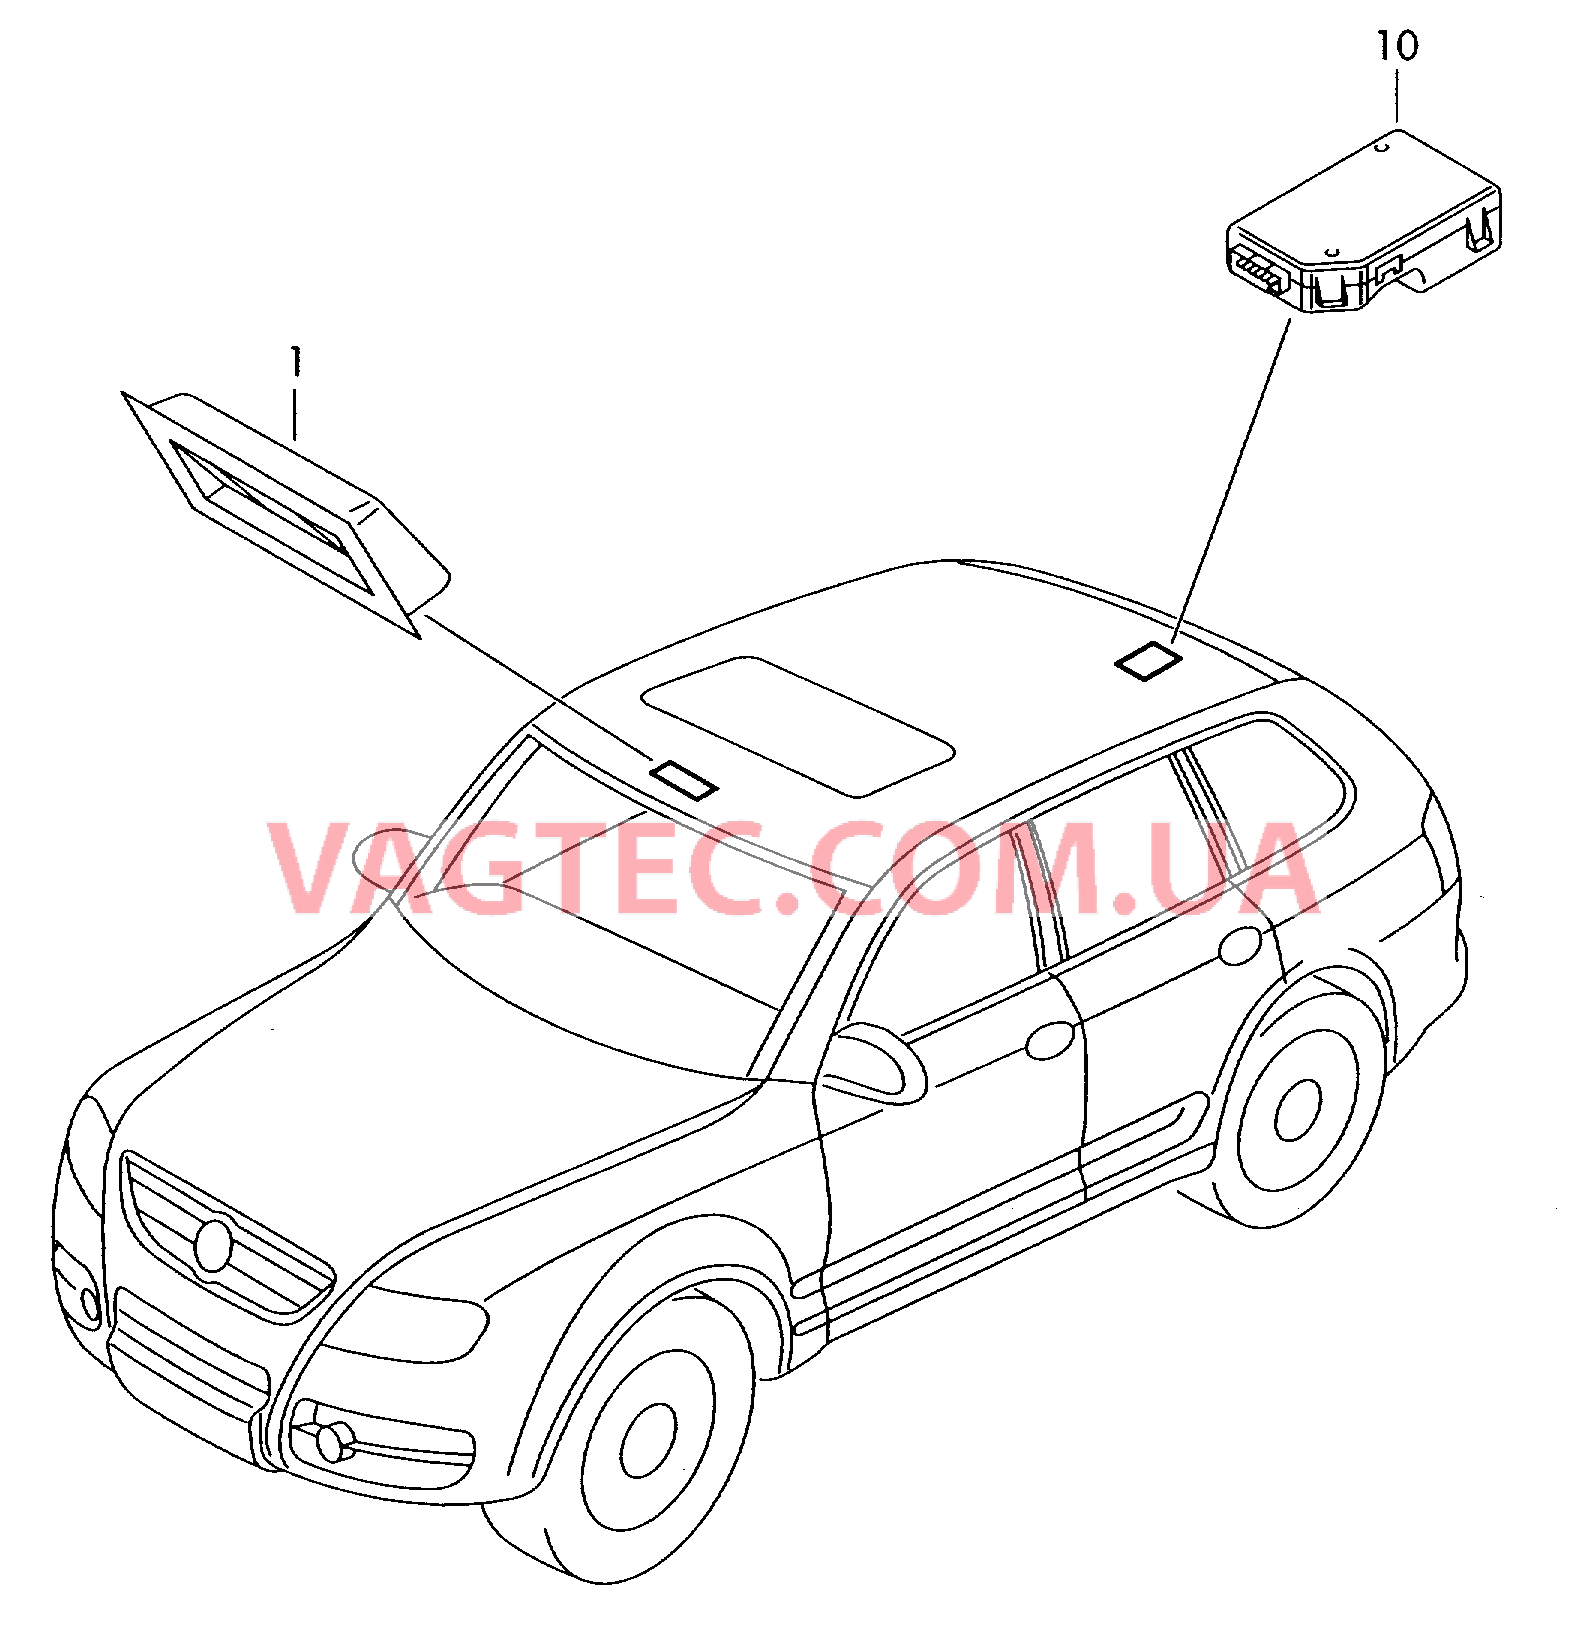 Панель управления и индикации Датчик магнитного поля для автомобилей с системой KOMPASS  для VOLKSWAGEN Touareg 2004